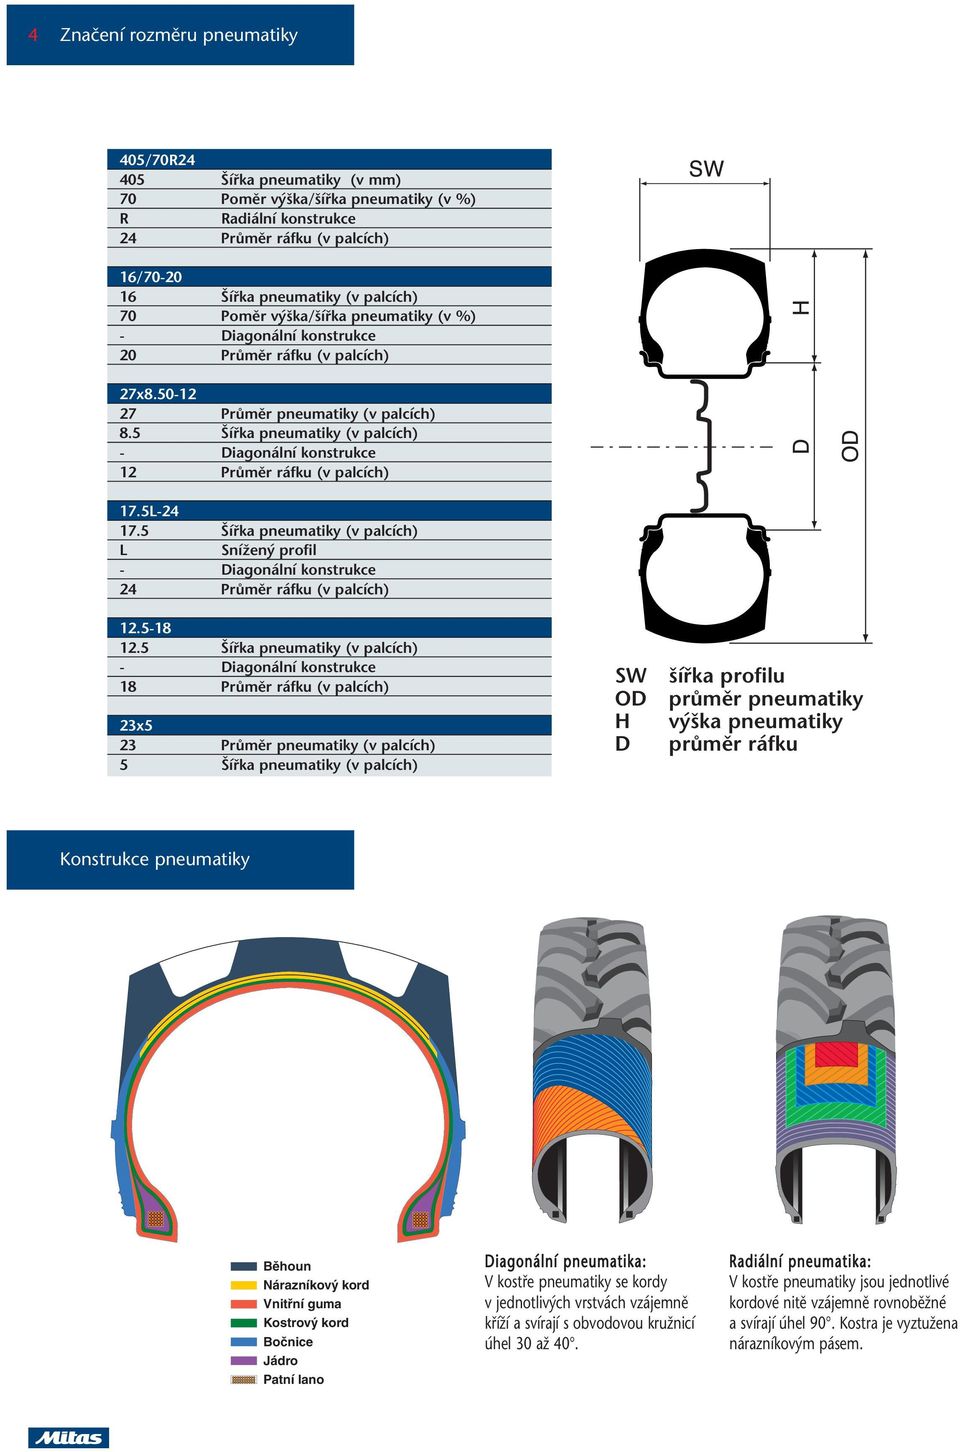 5 ífika pneumatiky (v palcích) - Diagonální konstrukce 12 PrÛmûr ráfku (v palcích) 17.5L-24 17.5 ífika pneumatiky (v palcích) L SníÏen profil - Diagonální konstrukce 24 PrÛmûr ráfku (v palcích) 12.